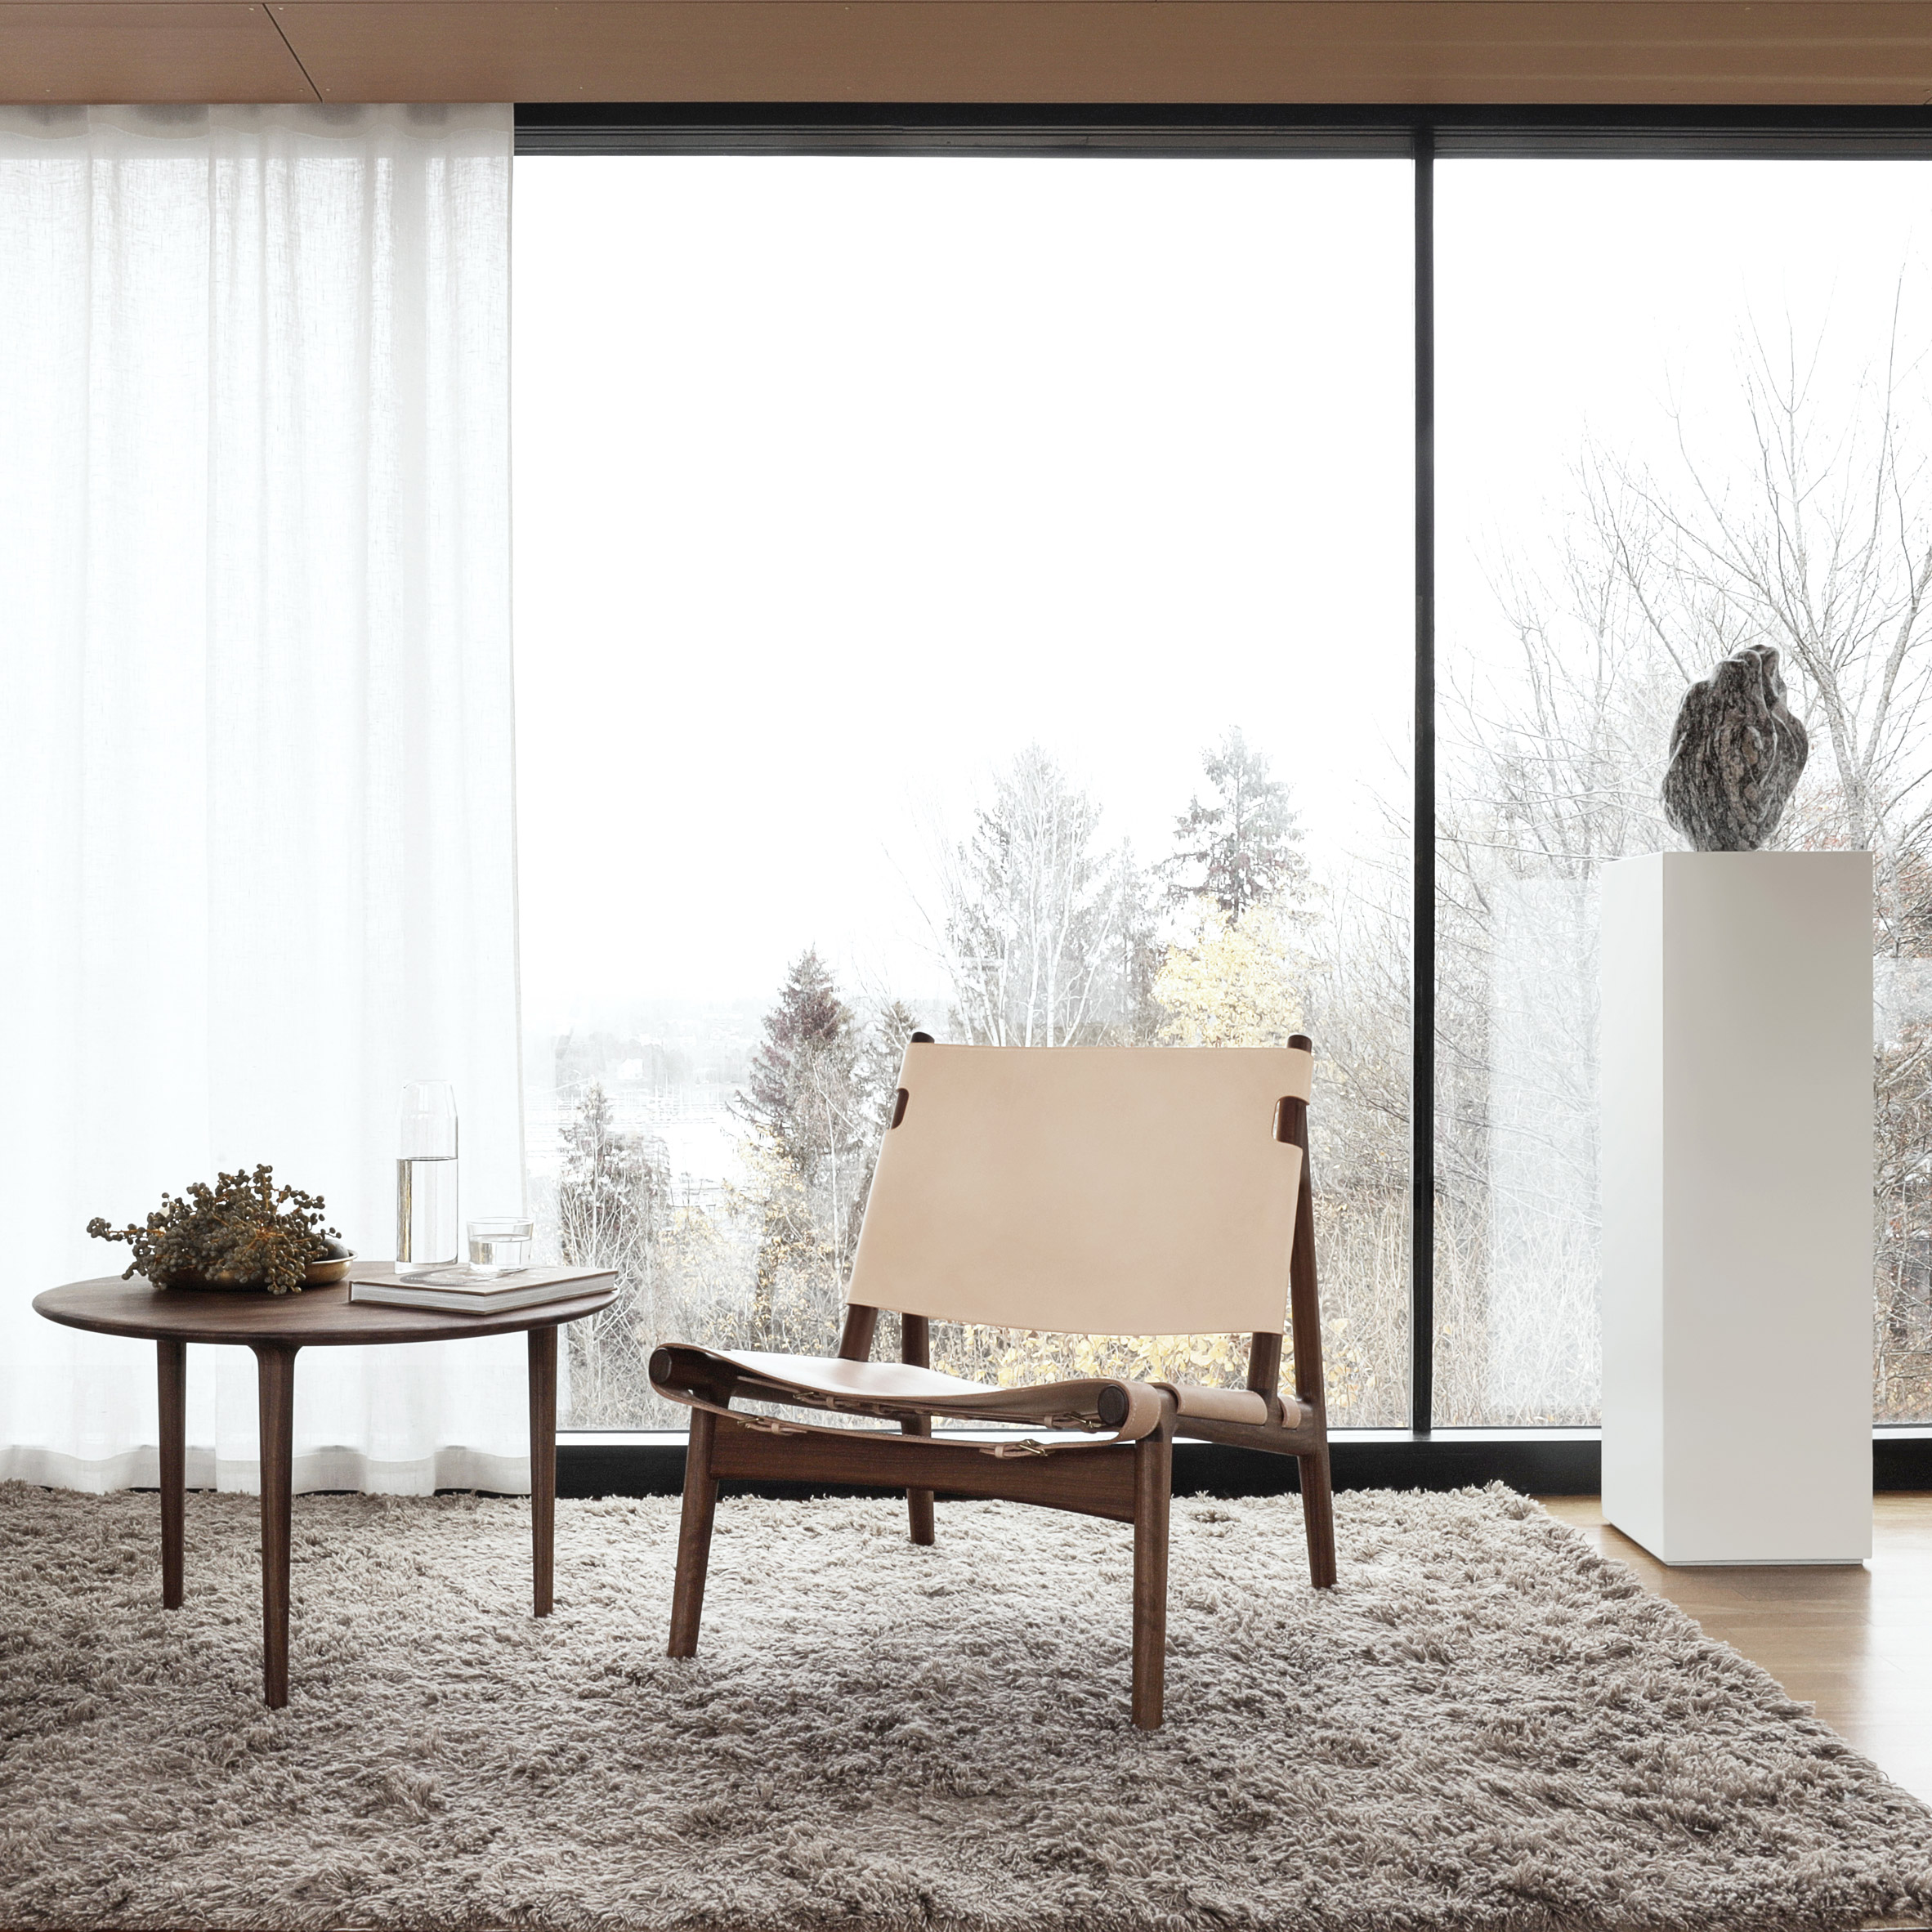 Hunter lounge chair by Scandinavian furniture brand Eikund